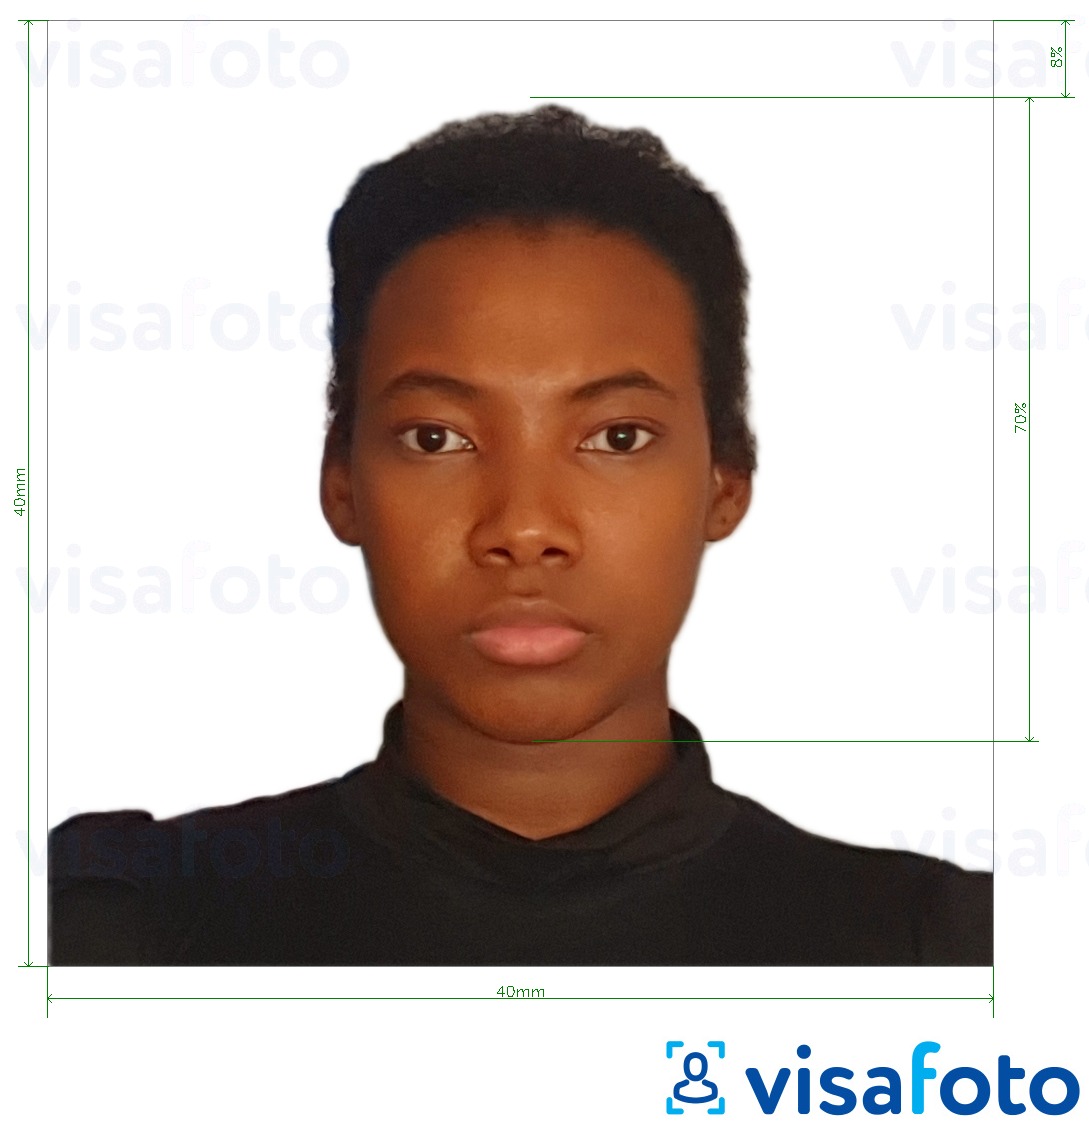 Esempio di foto per Carta d'identità Madagascar 40x40 mm con specifiche delle dimensioni esatte